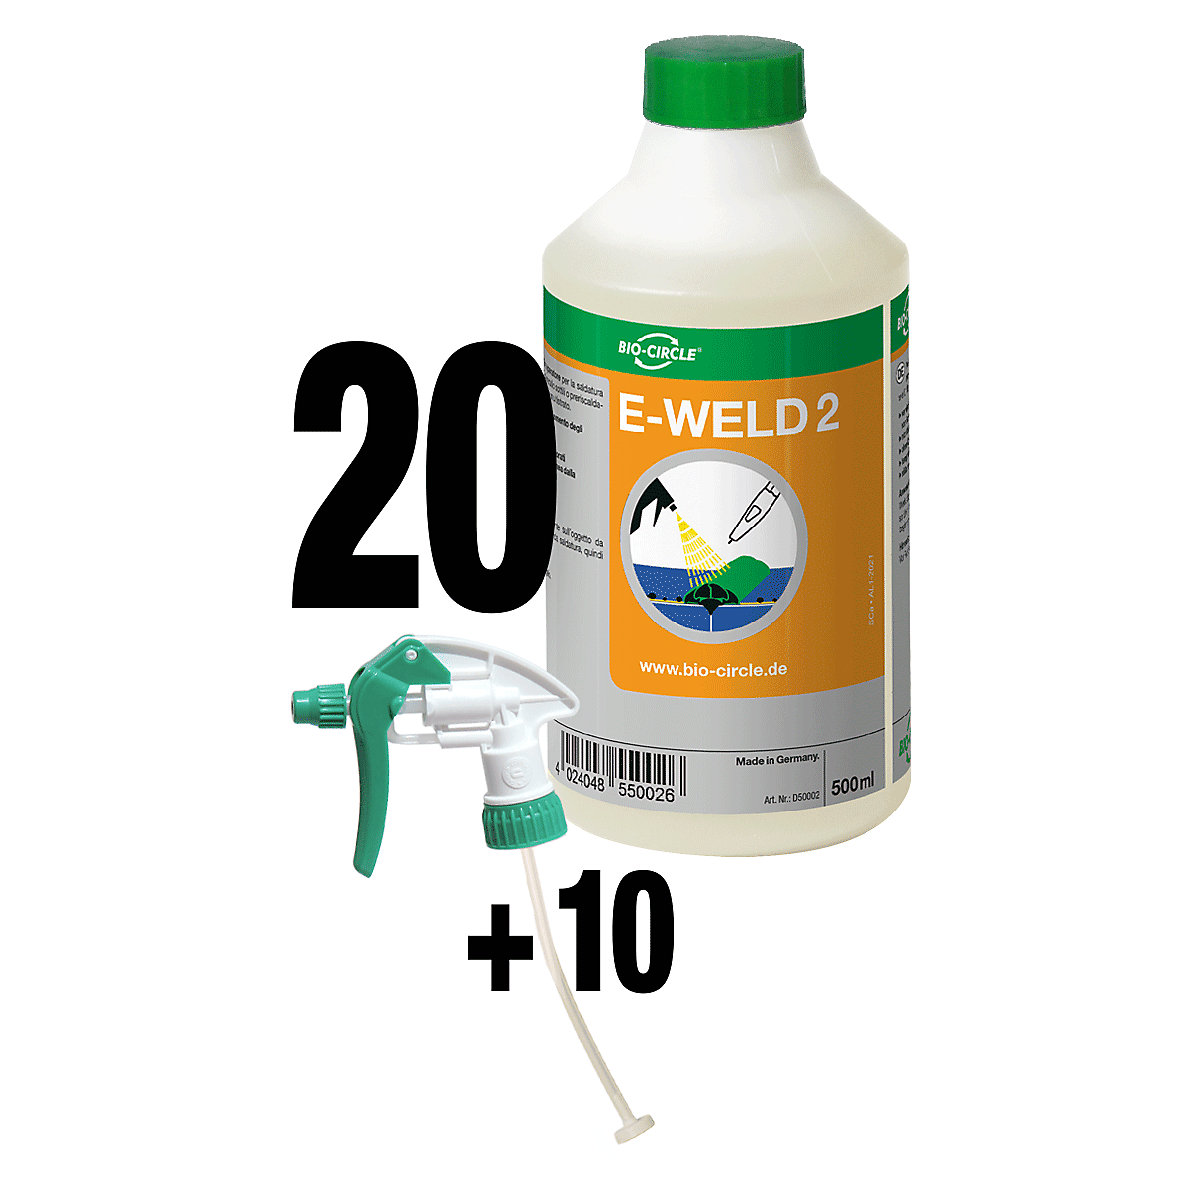 E-WELD 2 hegesztésvédő spray – Bio-Circle